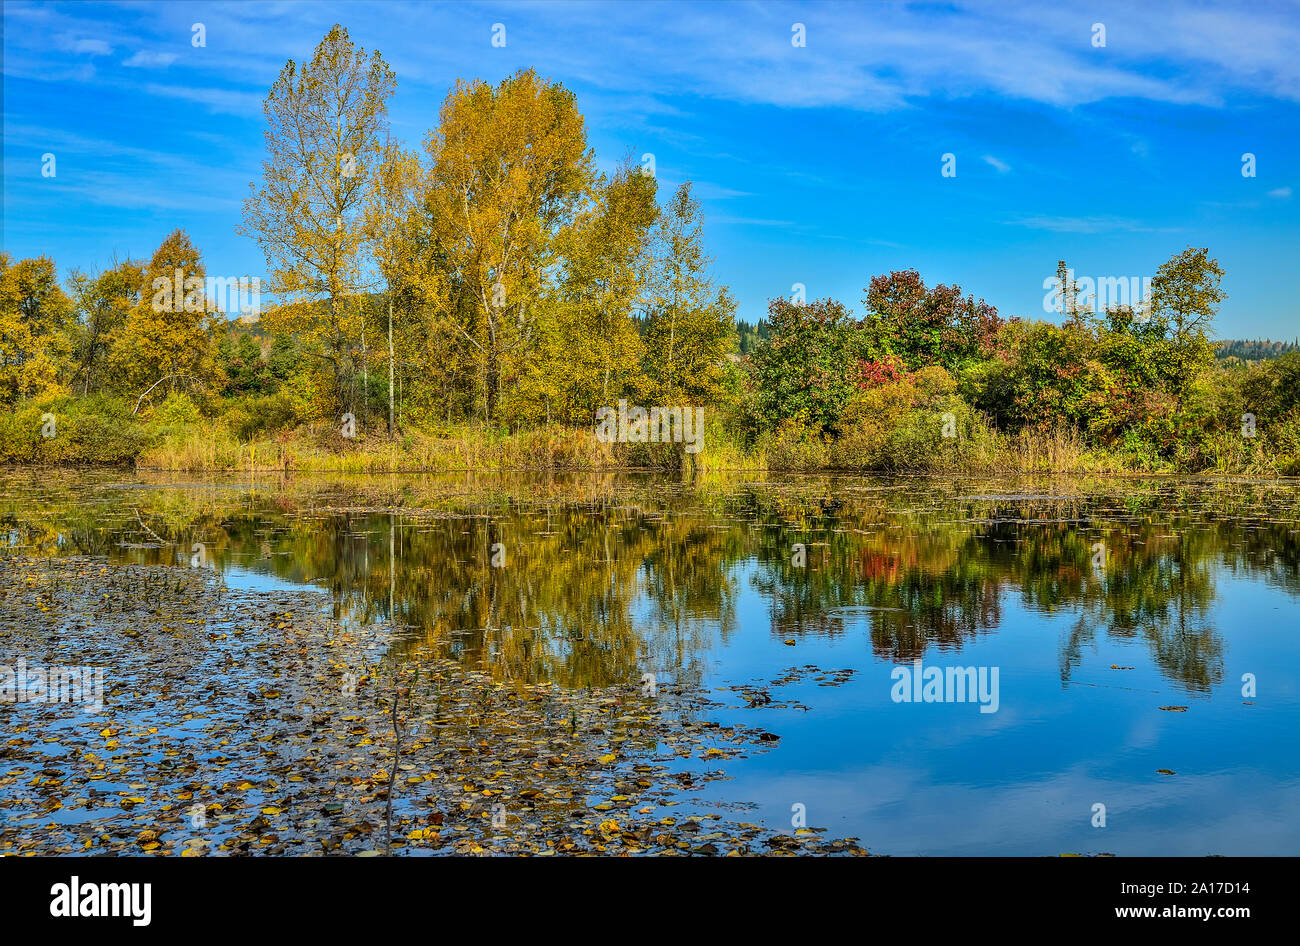 Goldener Herbst am Ufer des See. Helle Herbst Blätter der Birken in ruhigem Wasser schwimmen. Gelbe Bäume, Gras und blauer Himmel im Wasser spiegelt Stockfoto